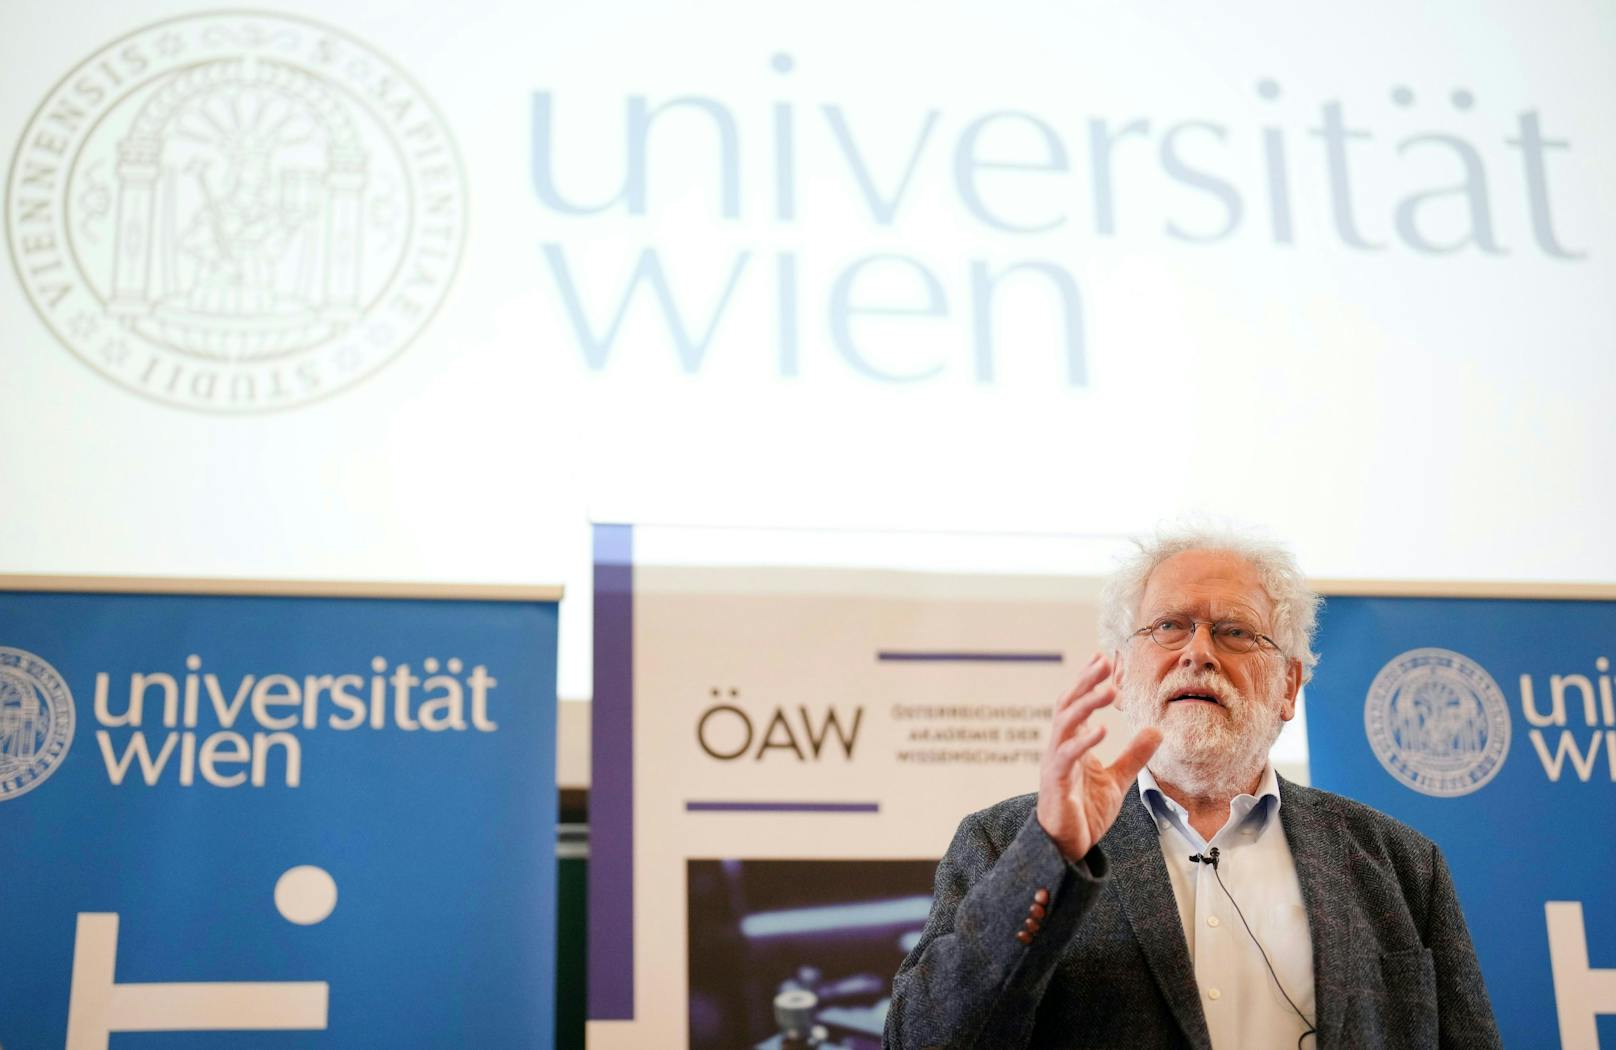 Zeilinger nach Nobelpreis-Auszeichnung: "Glück gehabt"